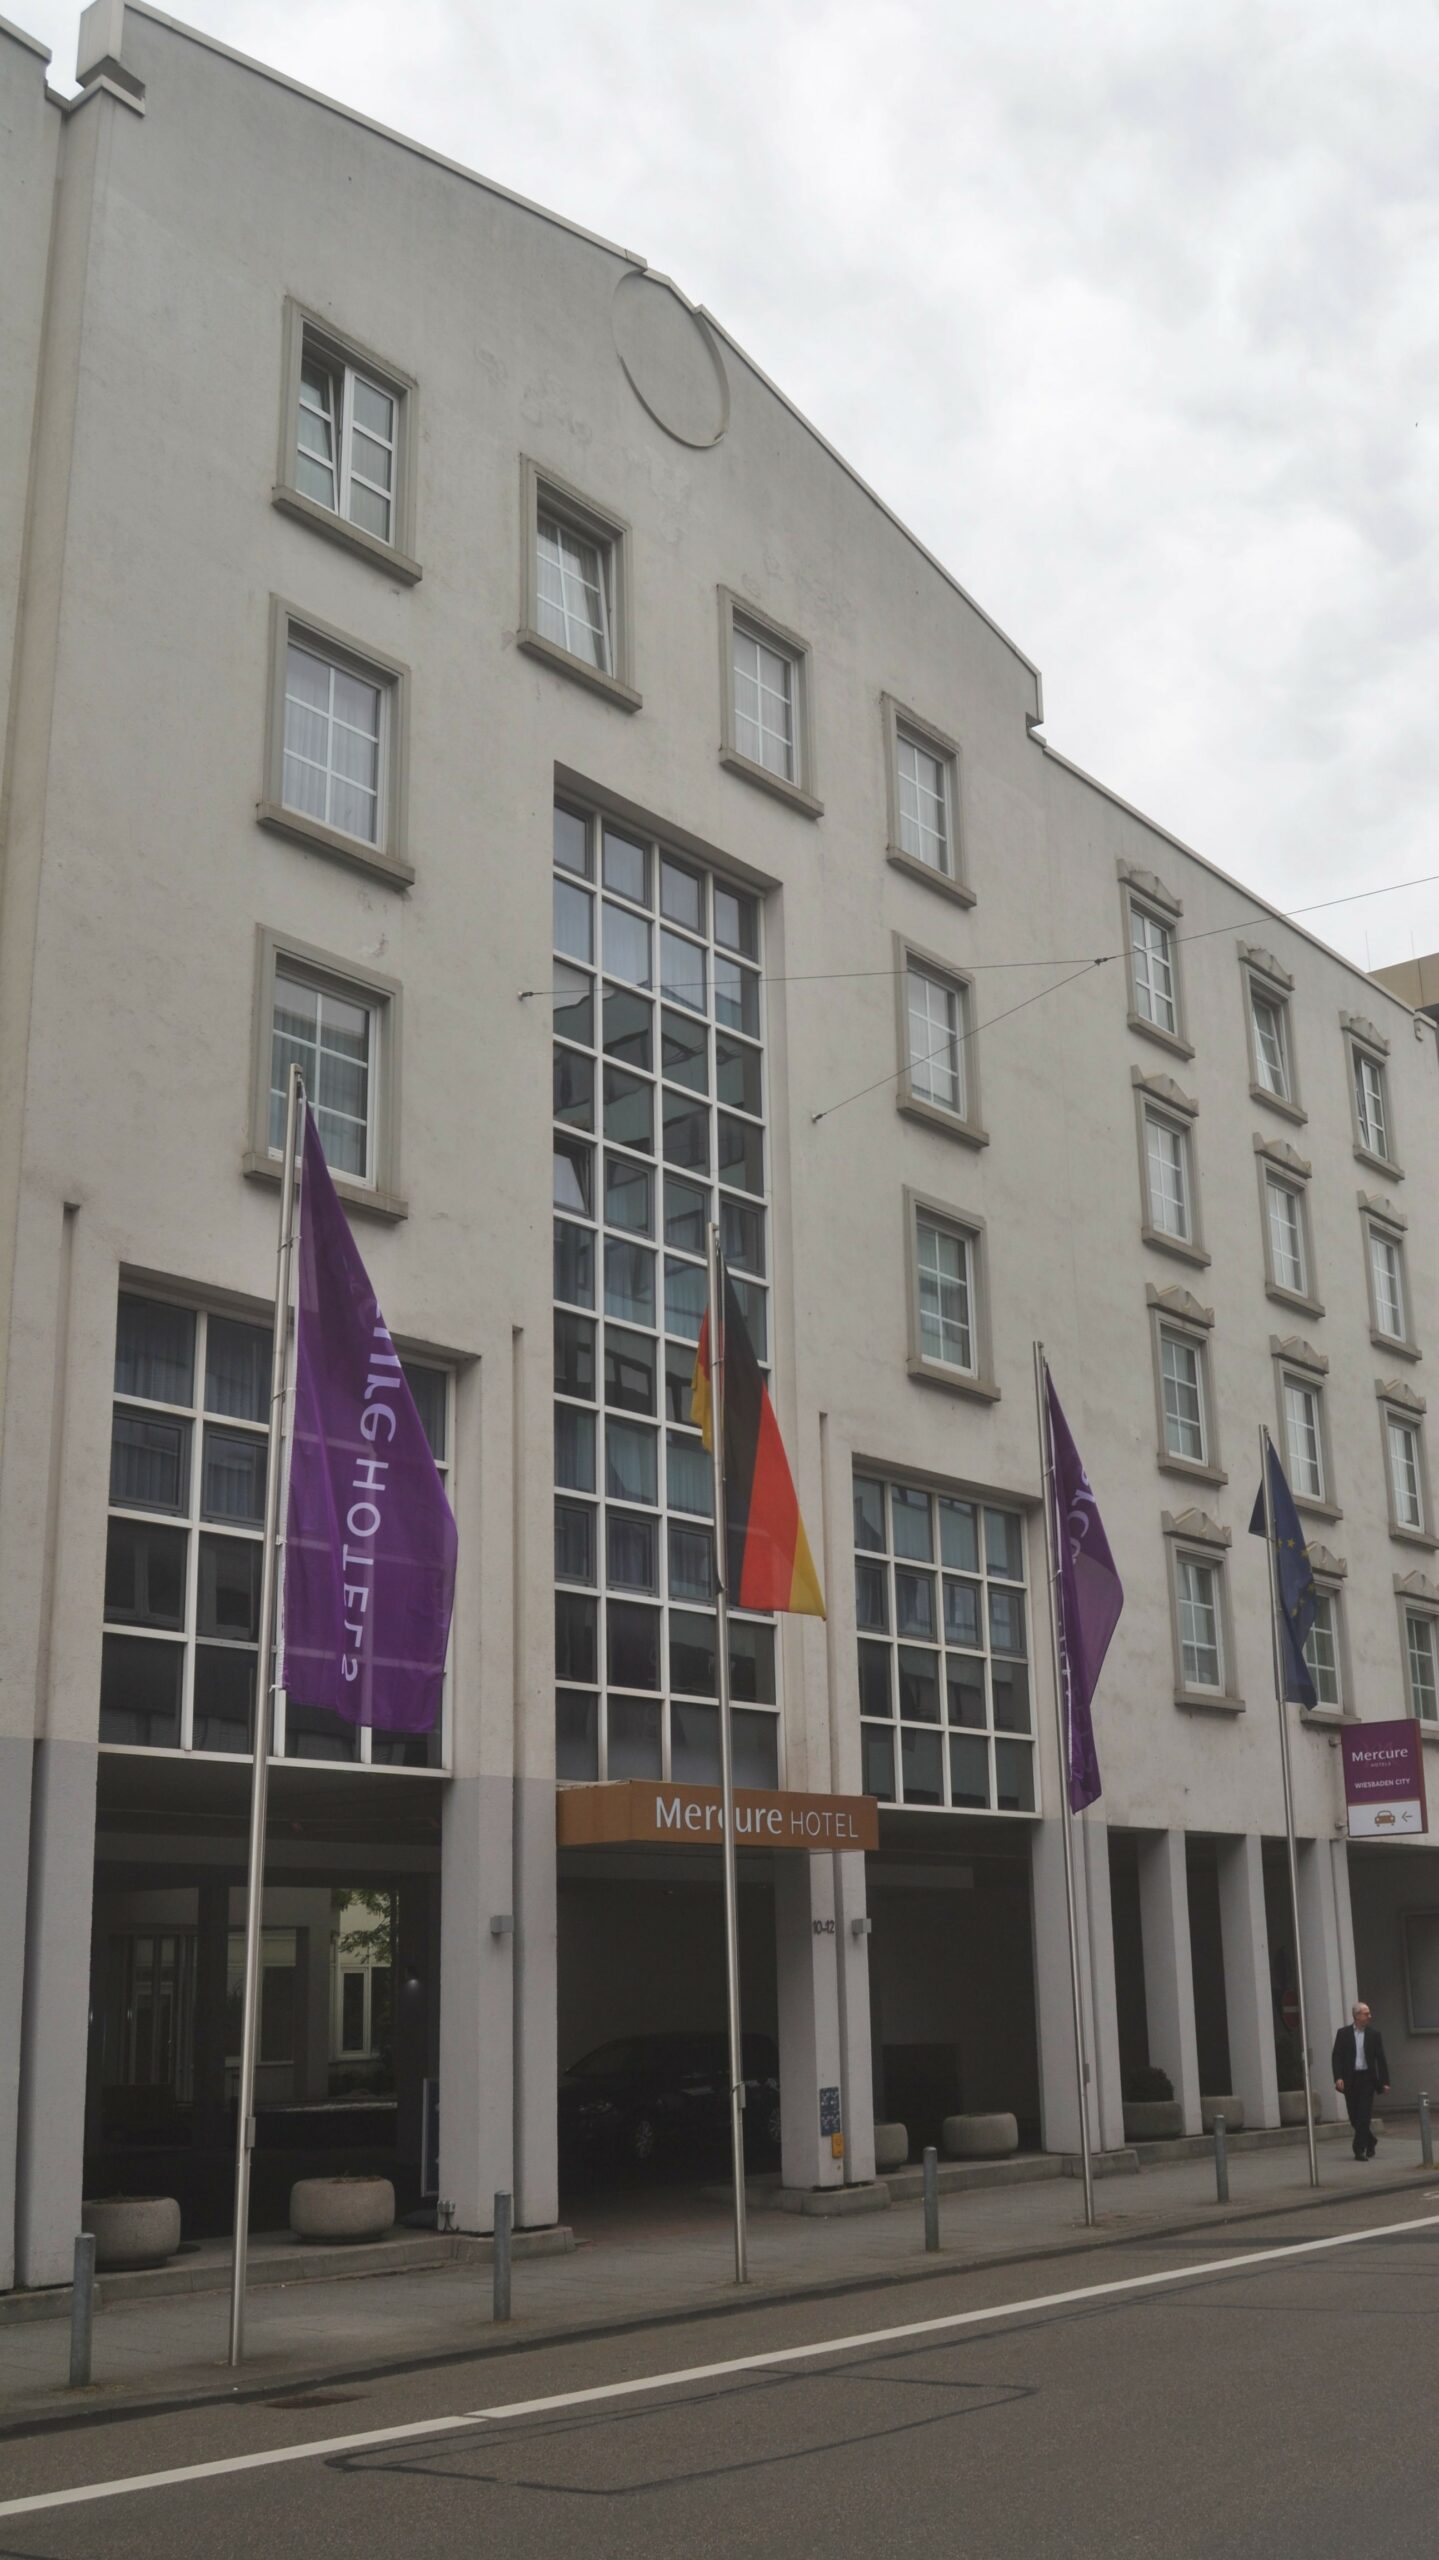 Mercure Hotel übernimmt Crowne Plaza in der Bahnhofstraße – Umfangreiche Neugestaltung geplant